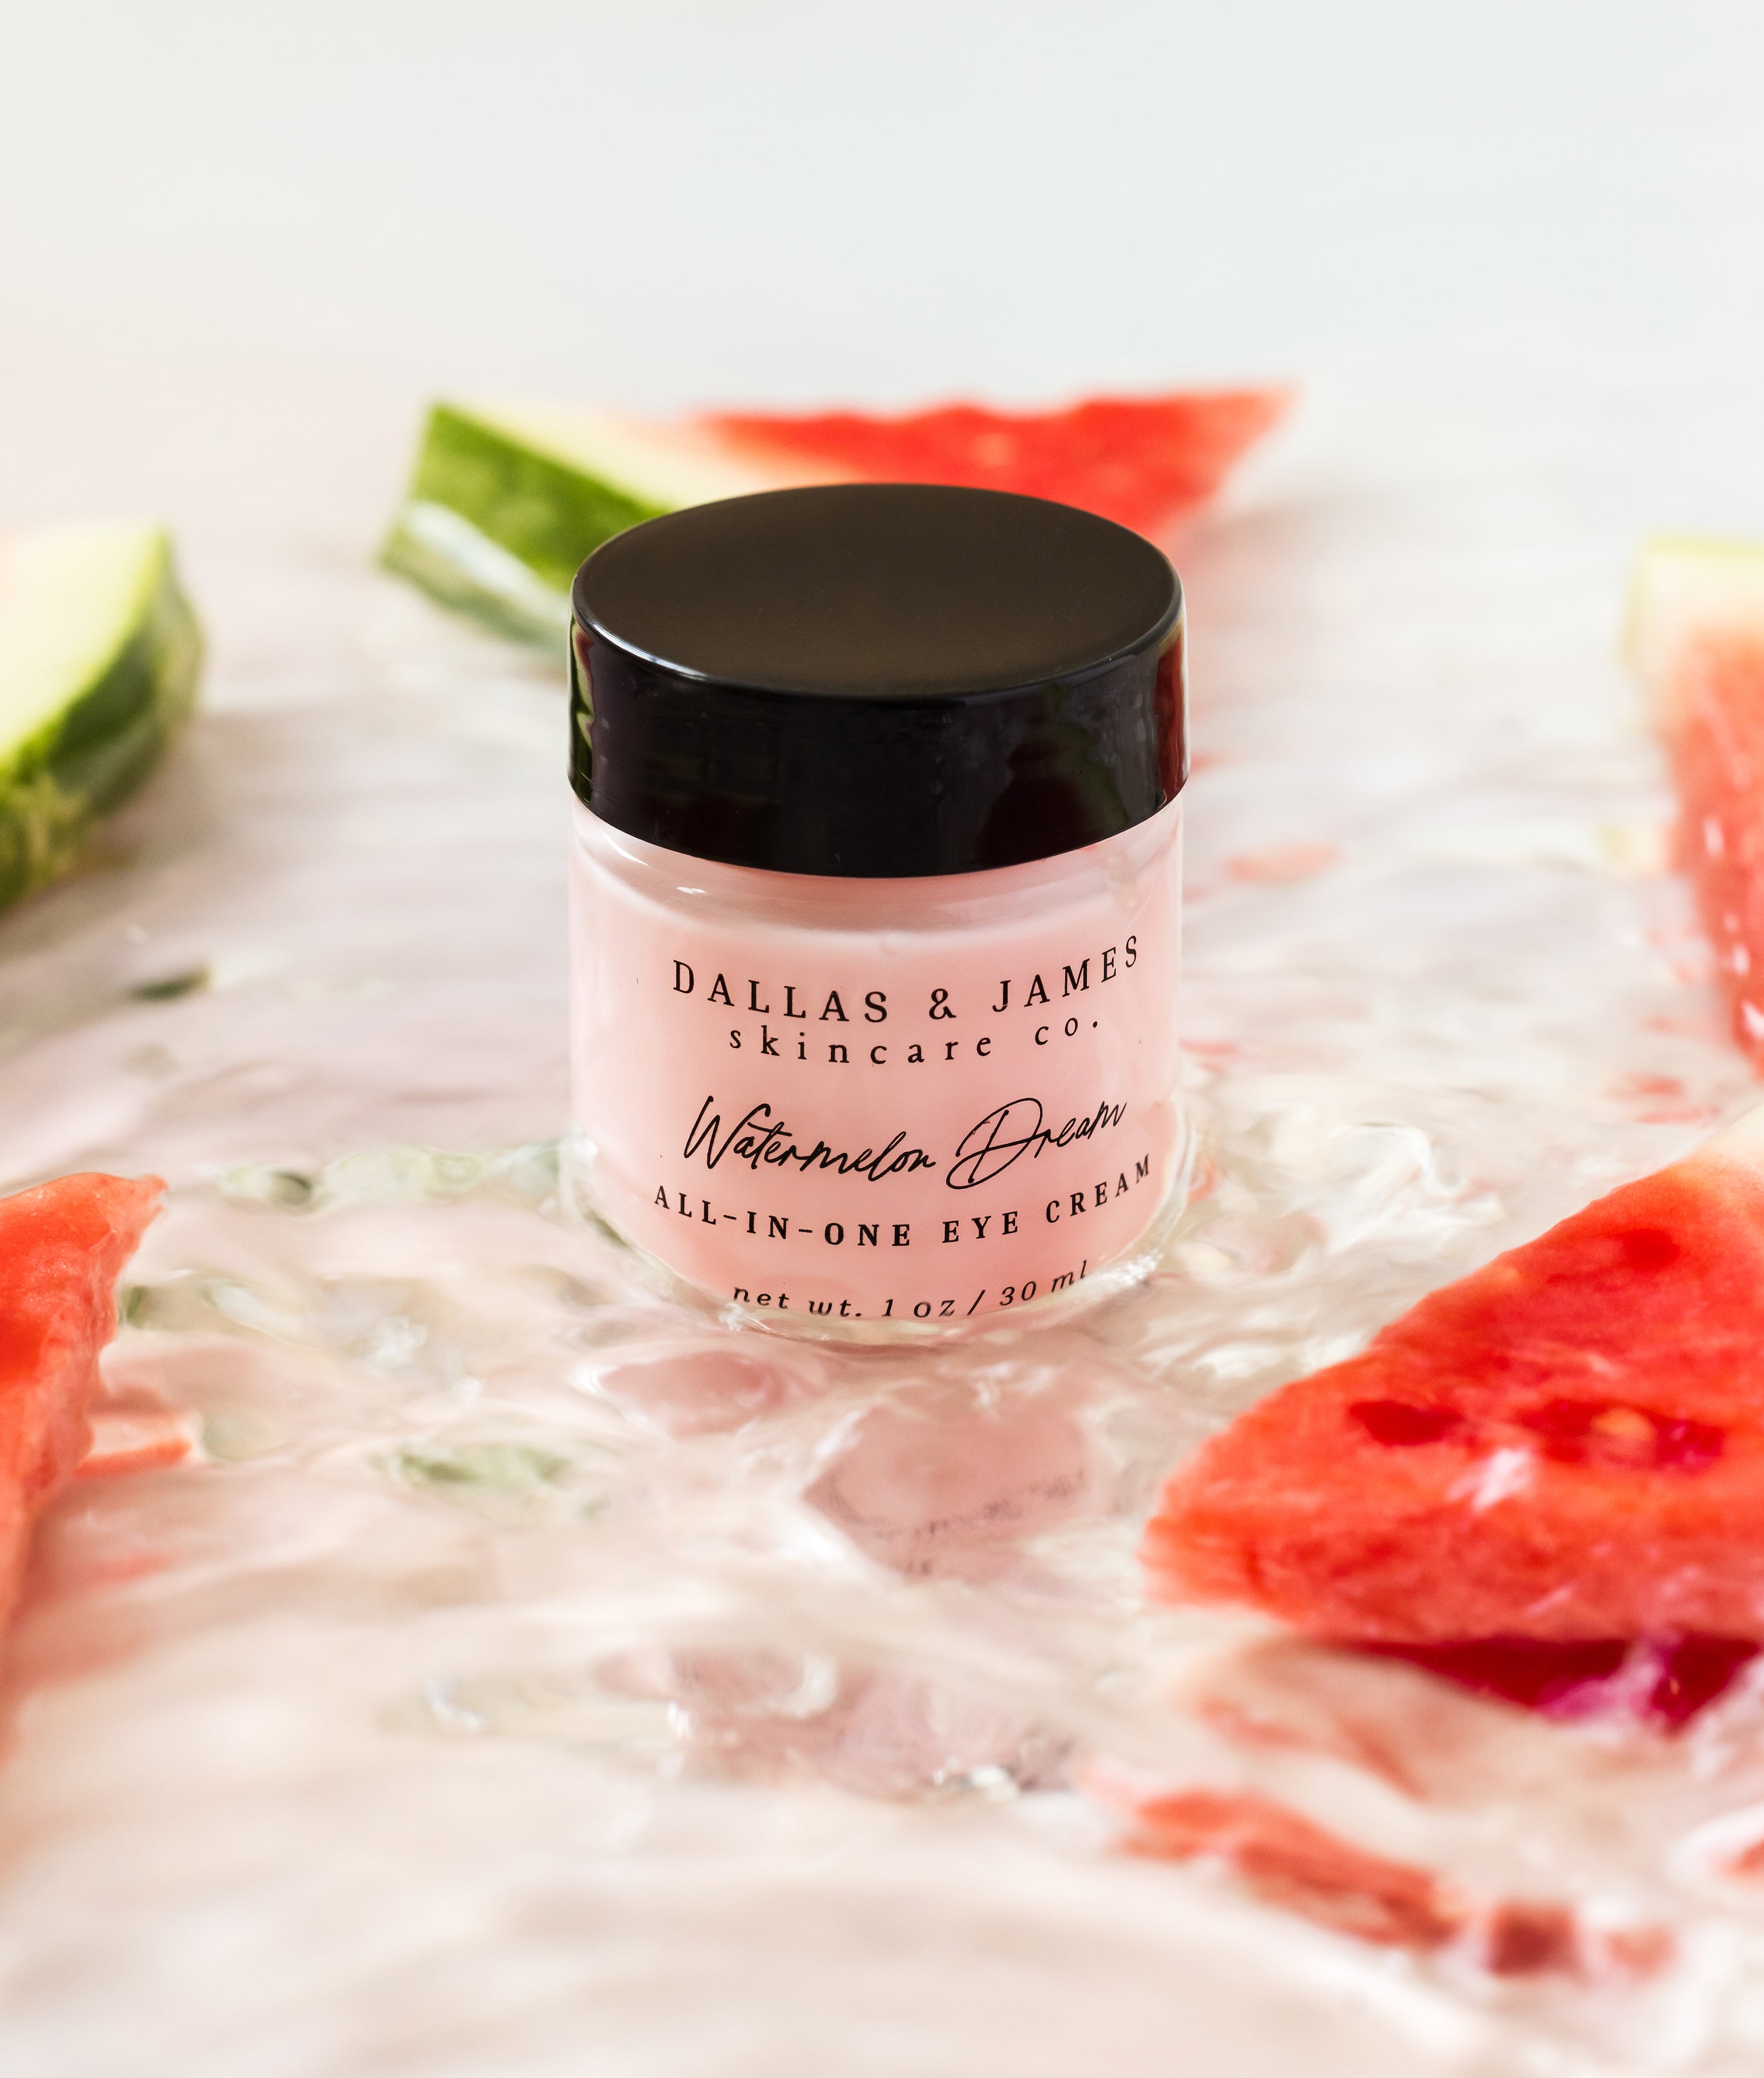 Dallas & James Skincare Co. Watermelon Dream All-In-One Eye Cream